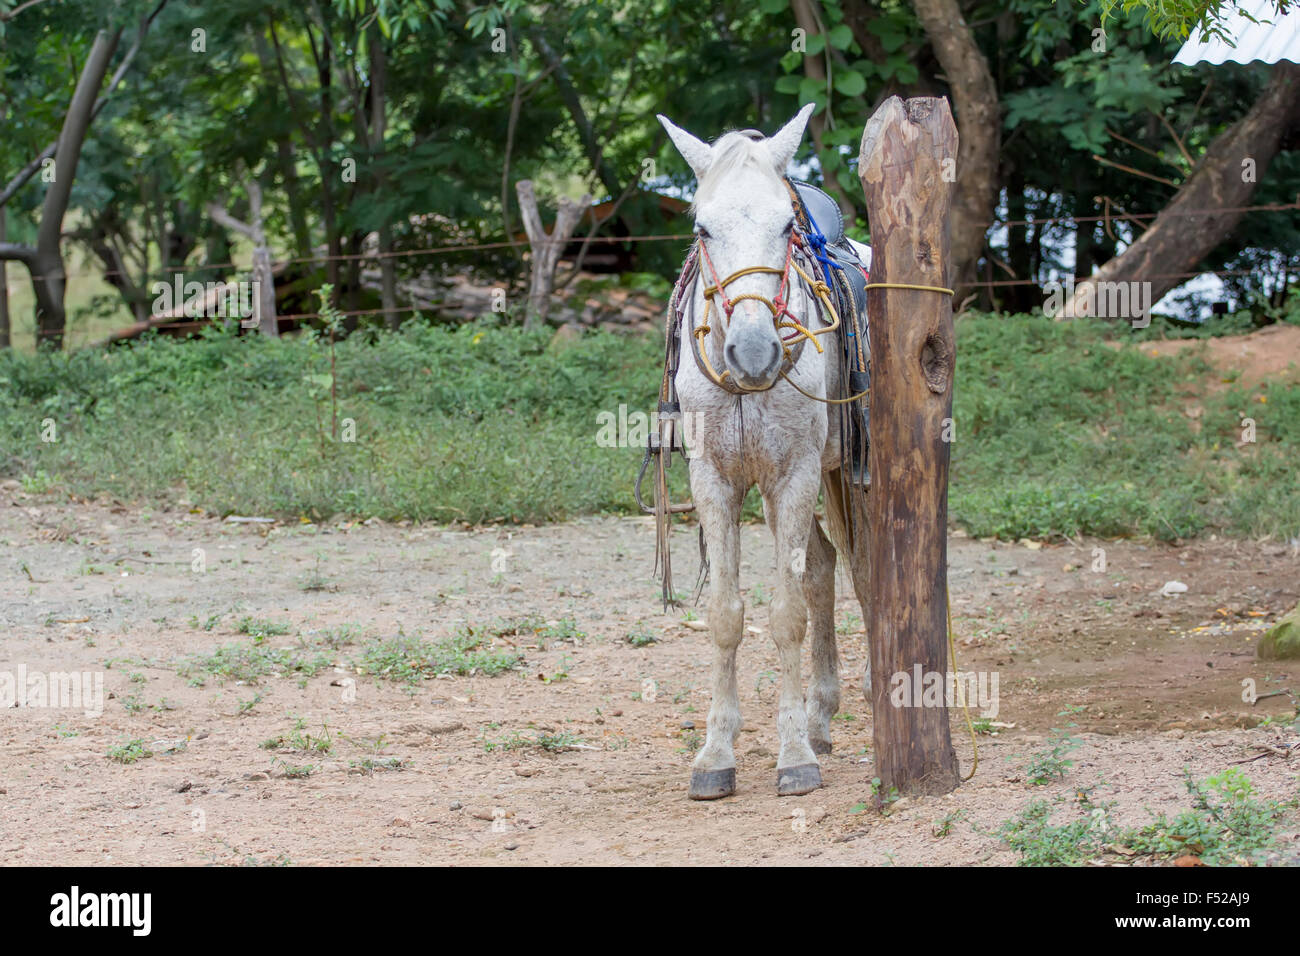 Rurale scena dal Nicaragua con un cavallo bianco in attesa del suo proprietario Foto Stock